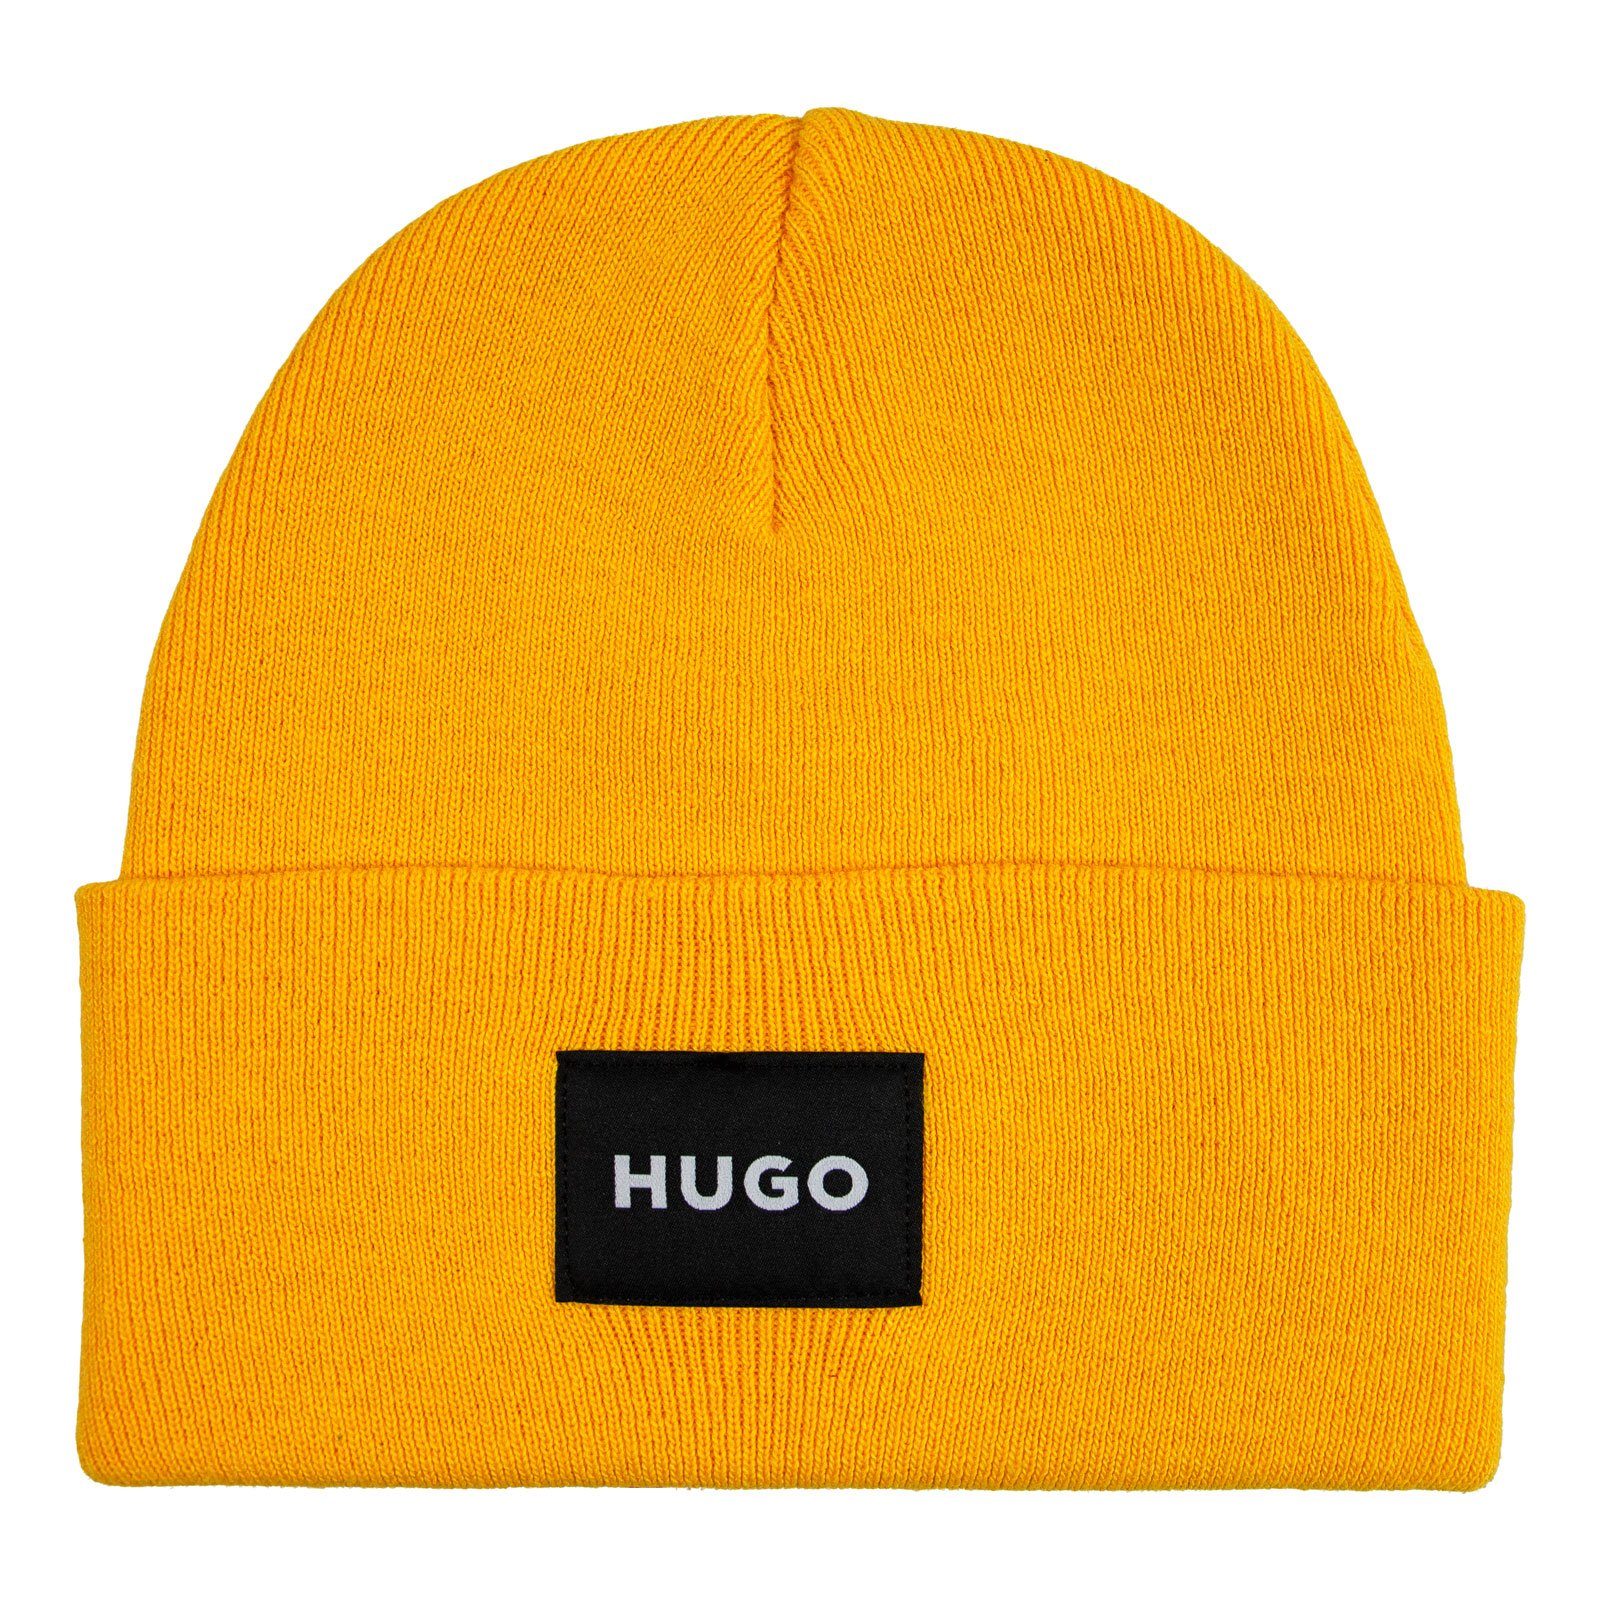 Vorschlag HUGO Strickmütze Xevon mit aufgenähtem Logo gelb